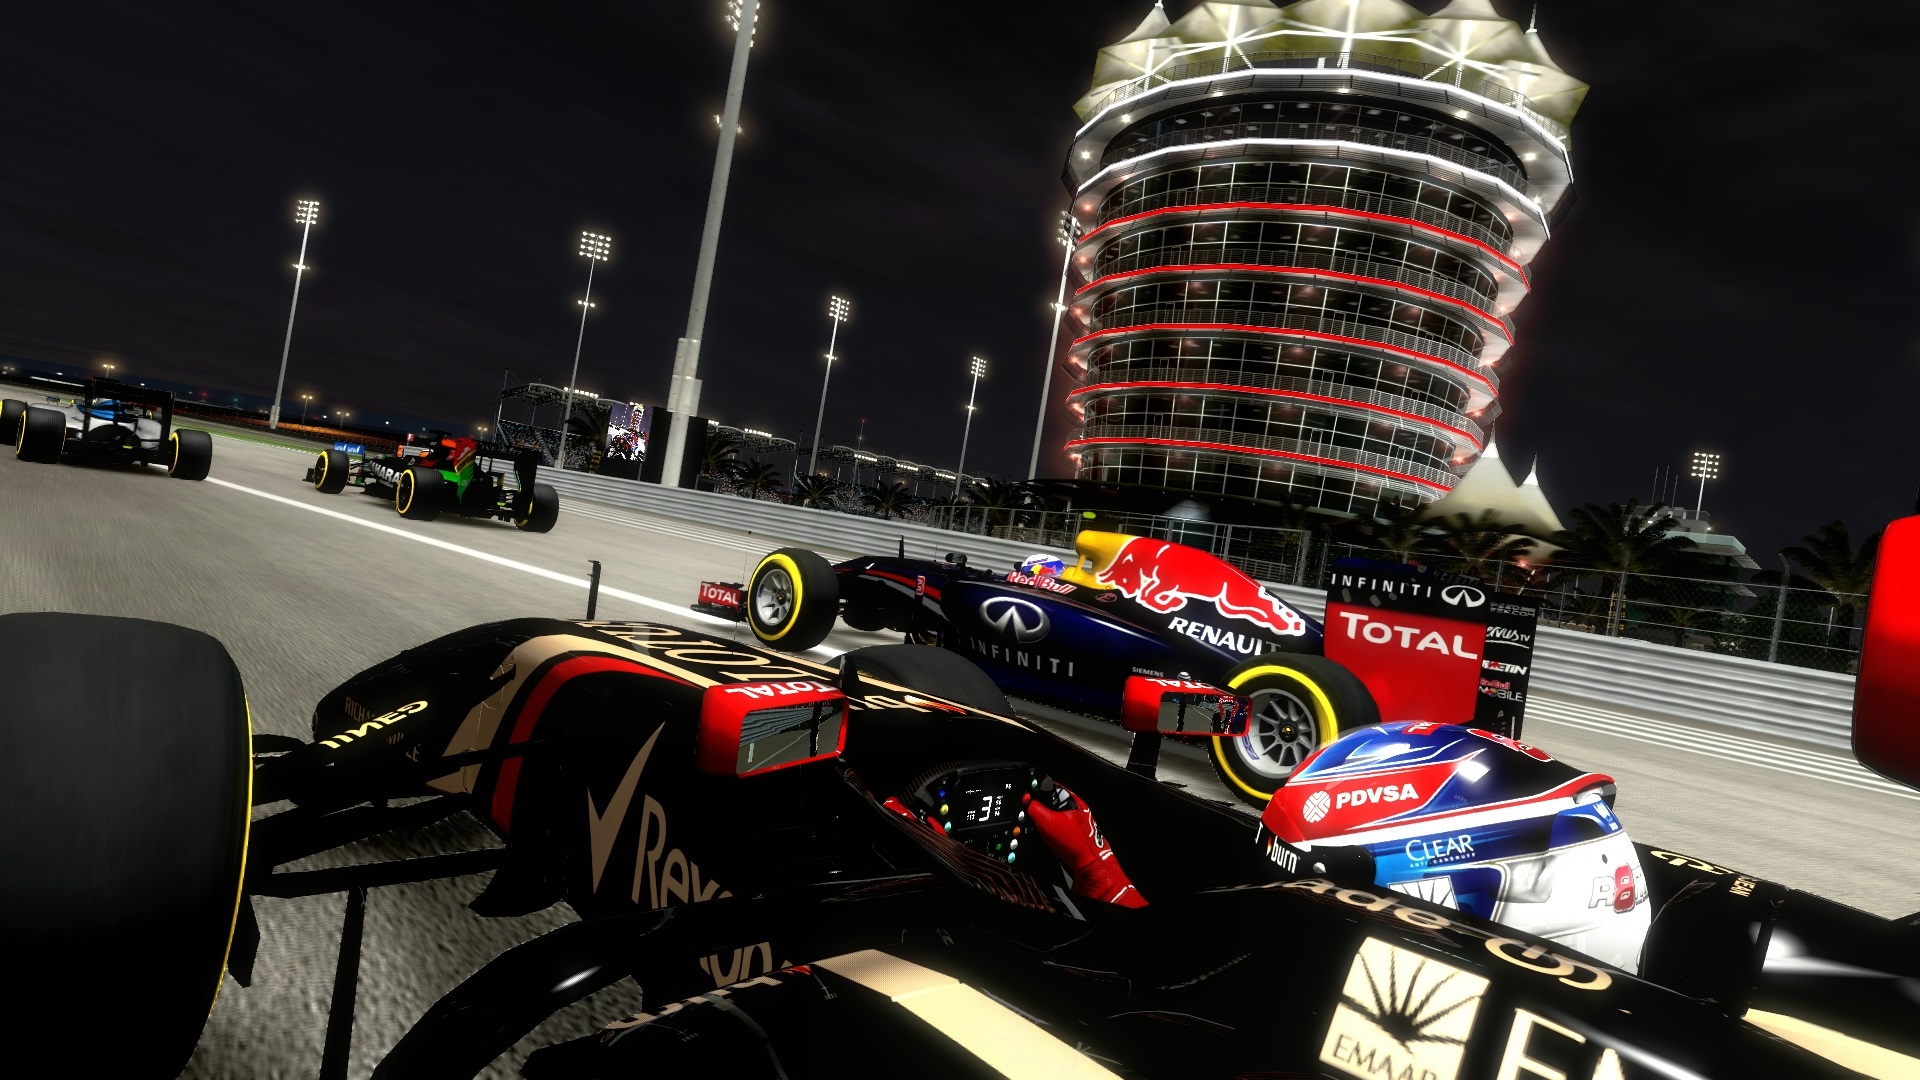 F1 2014: promissor, mas com pneus gastos